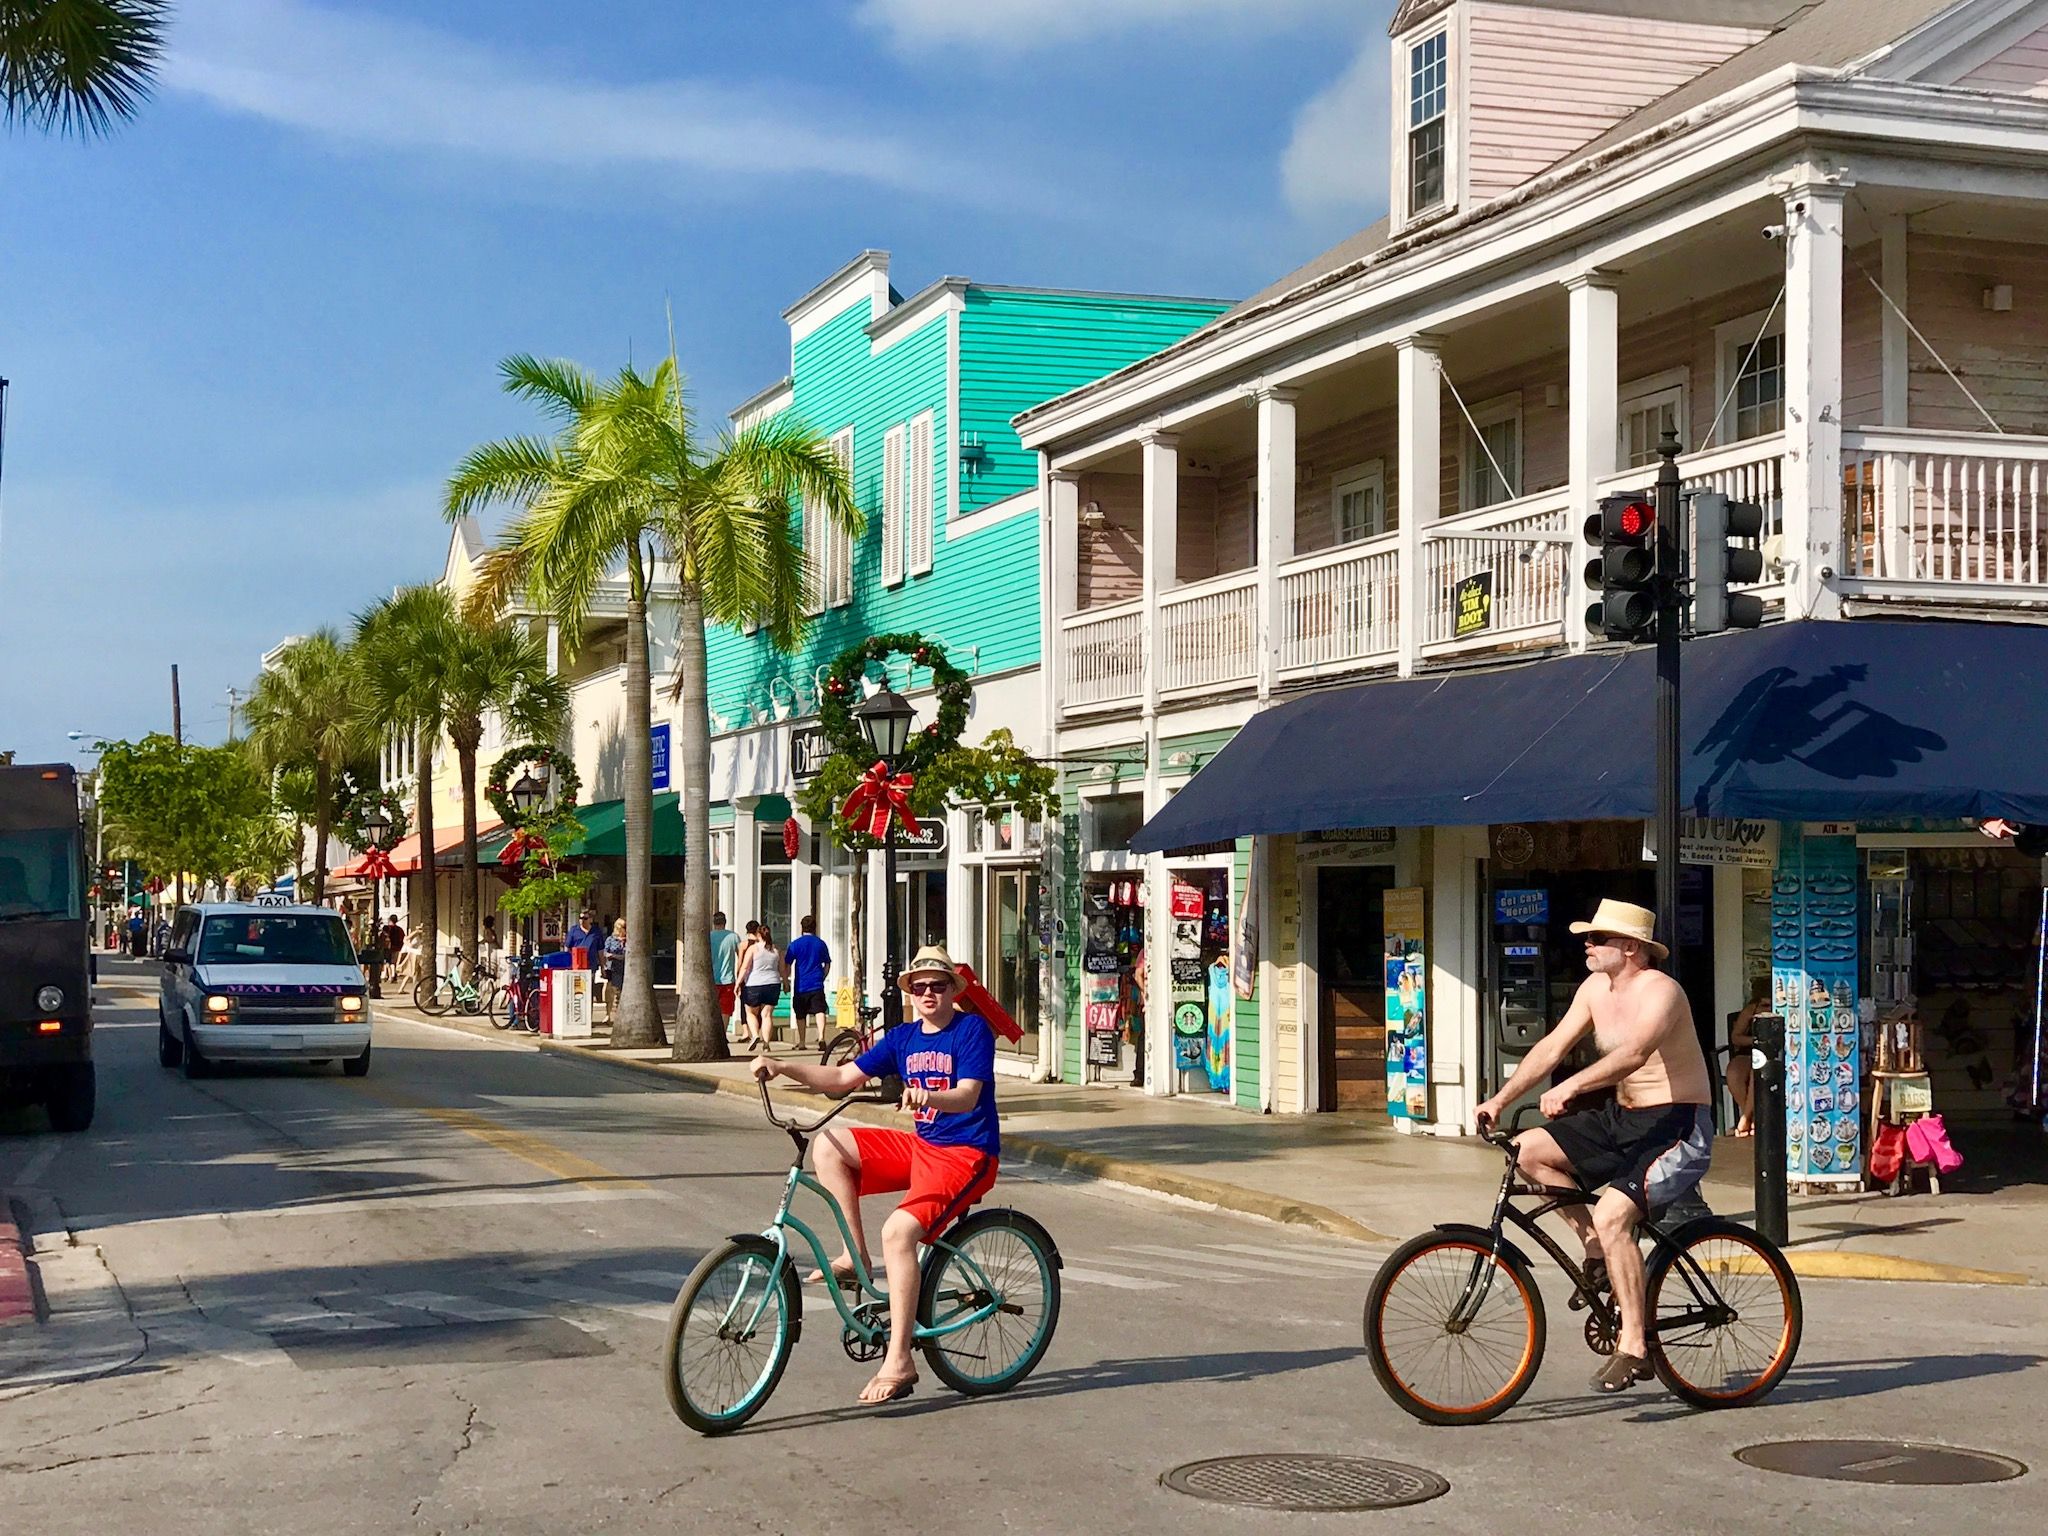 Florida Keys jesienią: idealne słoneczne miejsce od listopada! Foto: Sascha Tegtmeyer 5. Floryda - ciepły cel podróży w październiku i listopadzie?